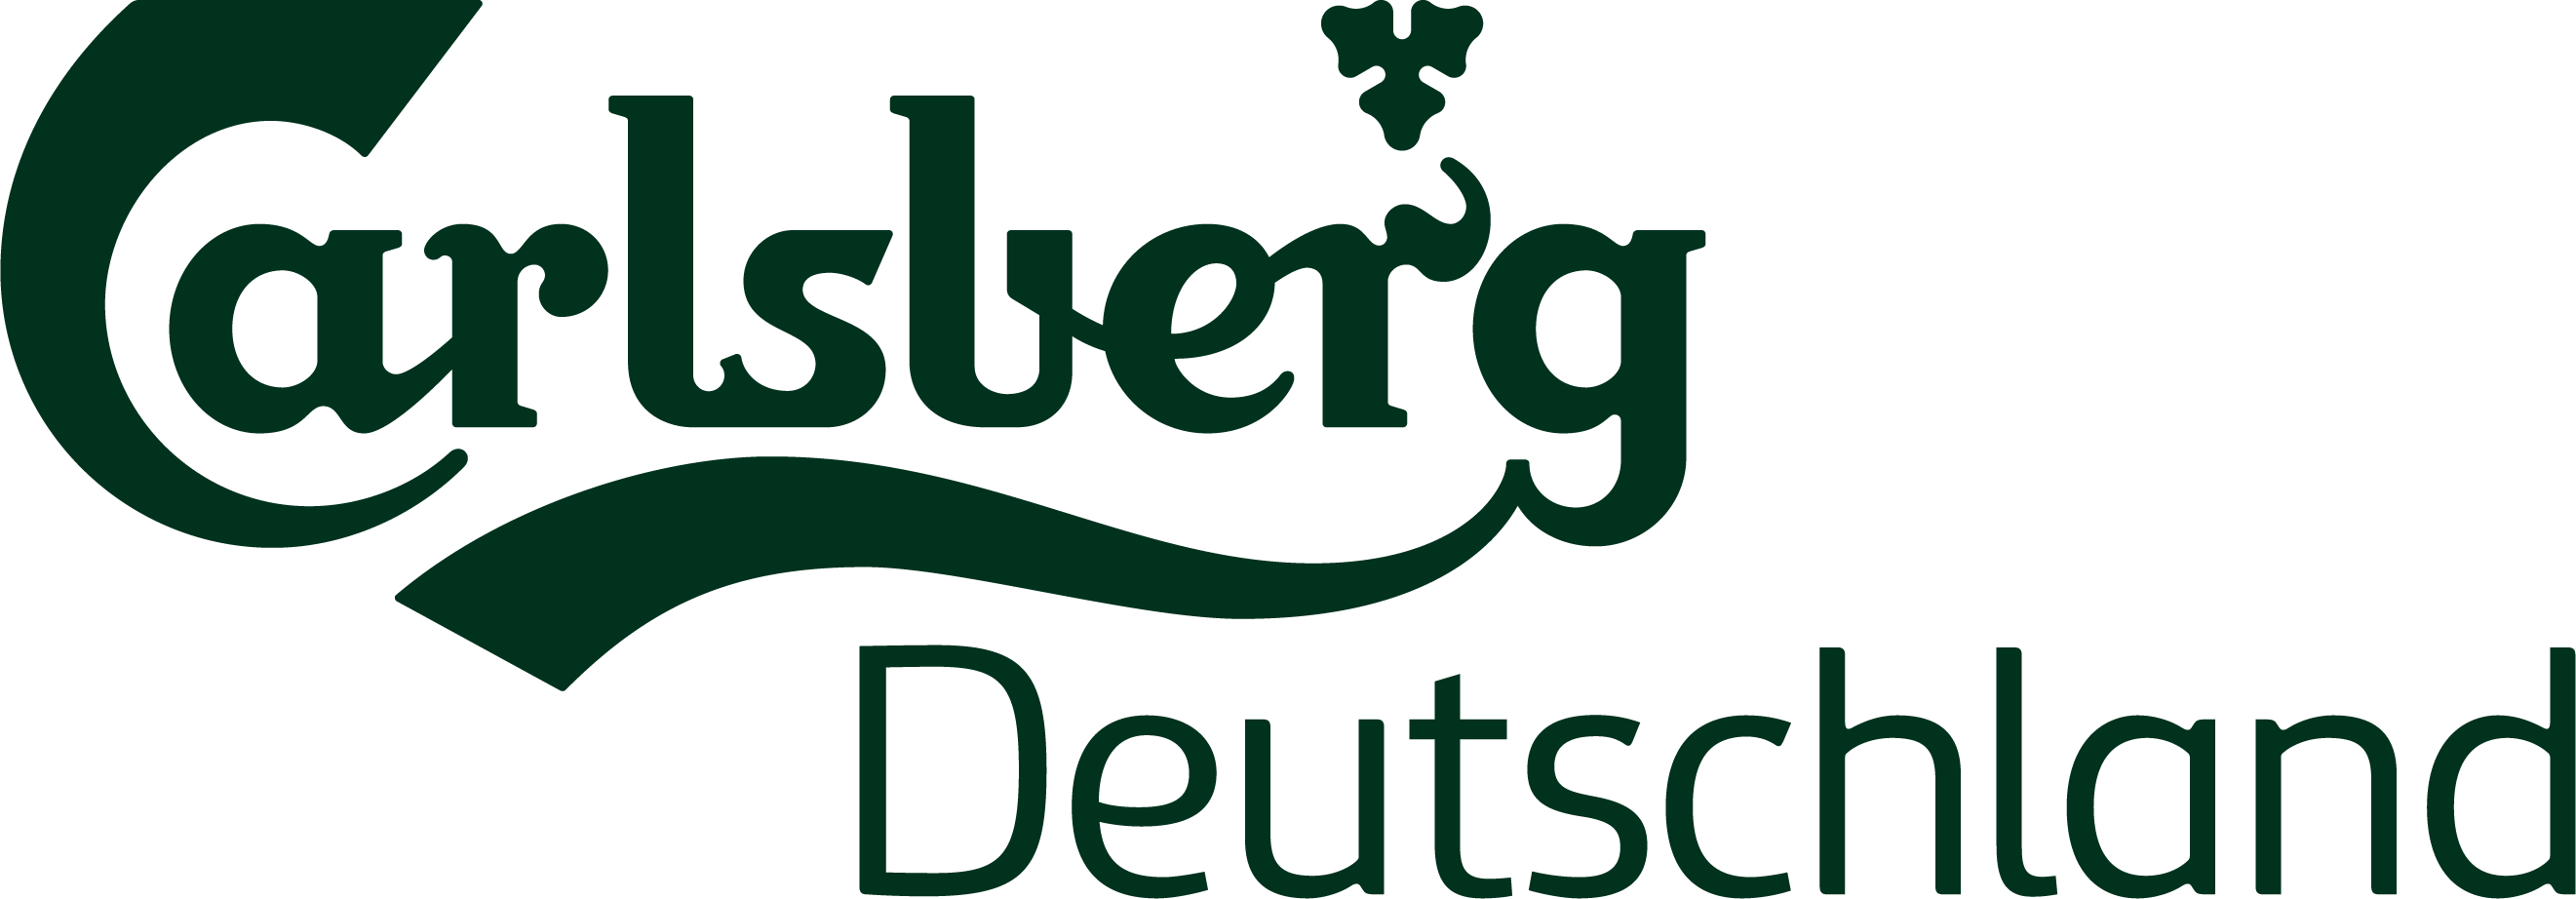 Logo Carlsberg Deutschland